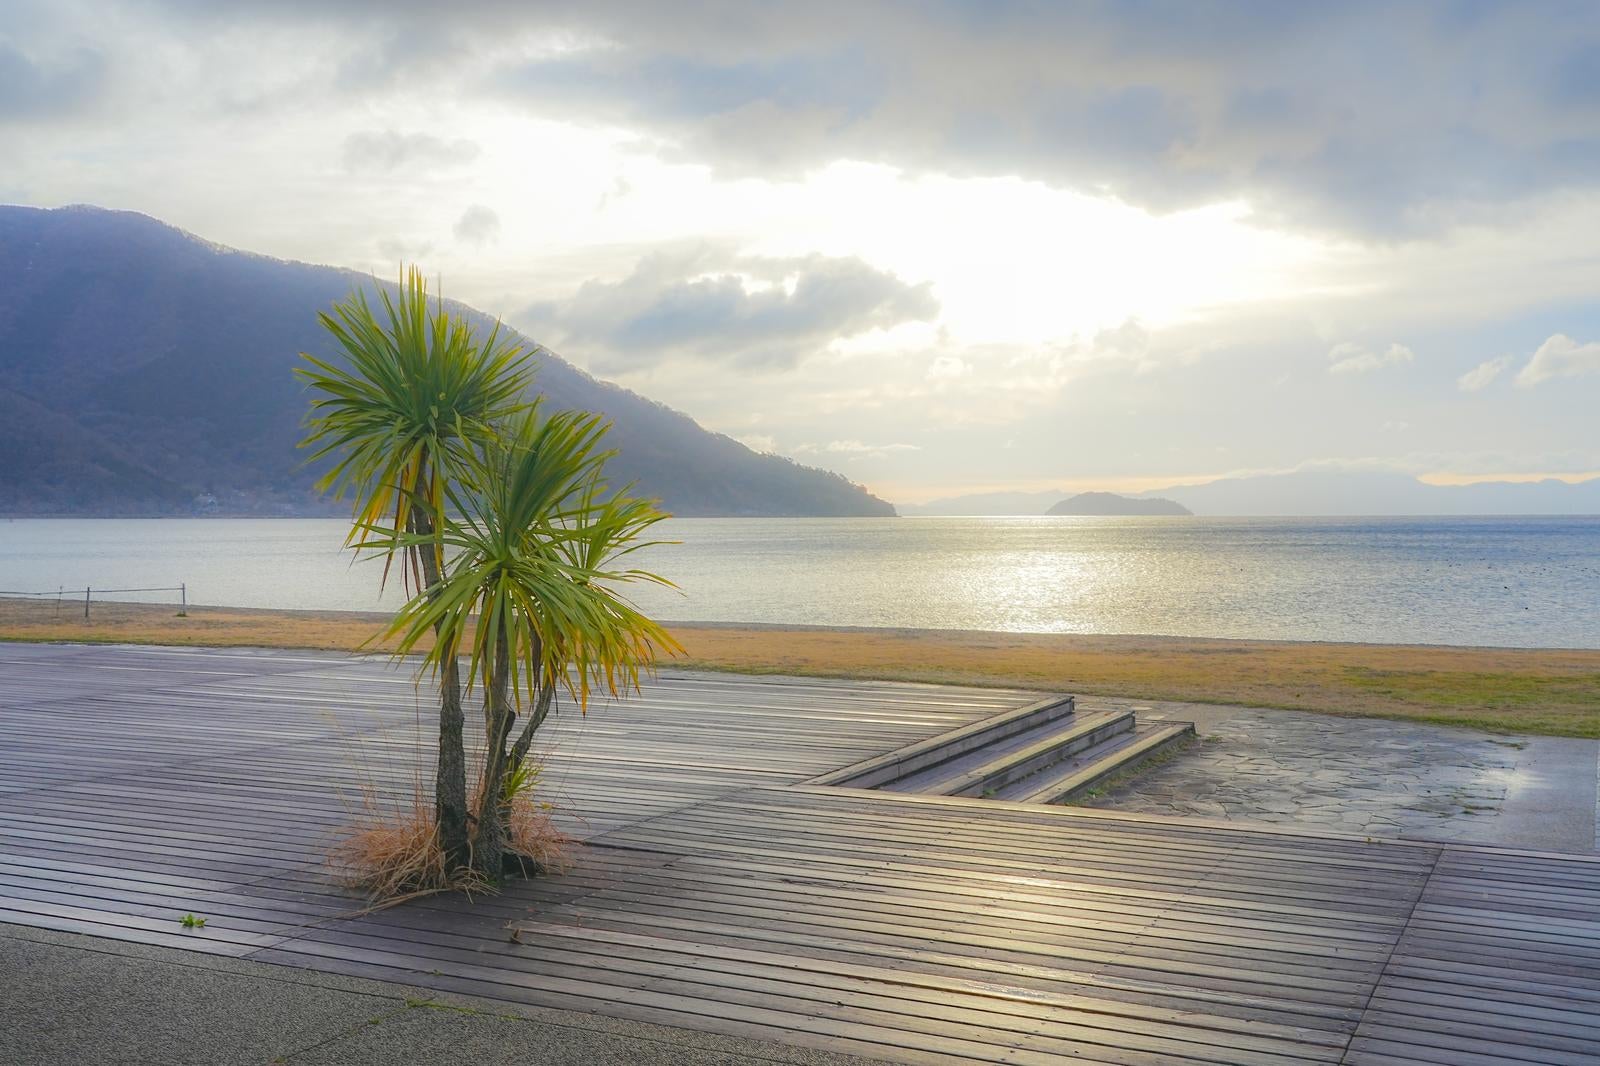 「早朝のマキノサニービーチで迎える穏やかな琵琶湖の朝」の写真